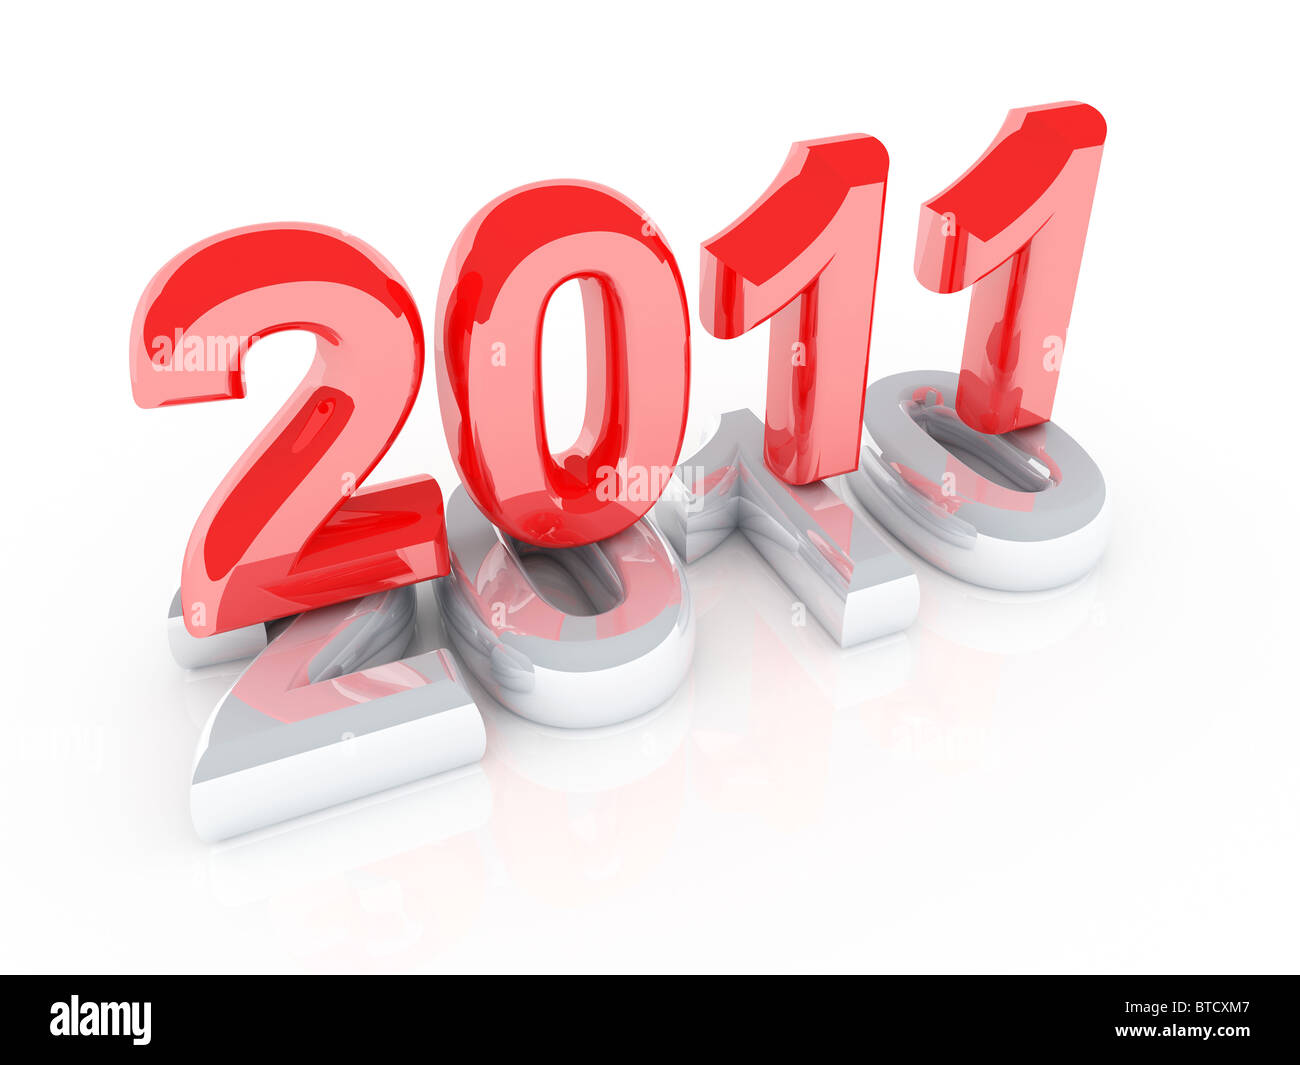 2011 new year Stock Photo